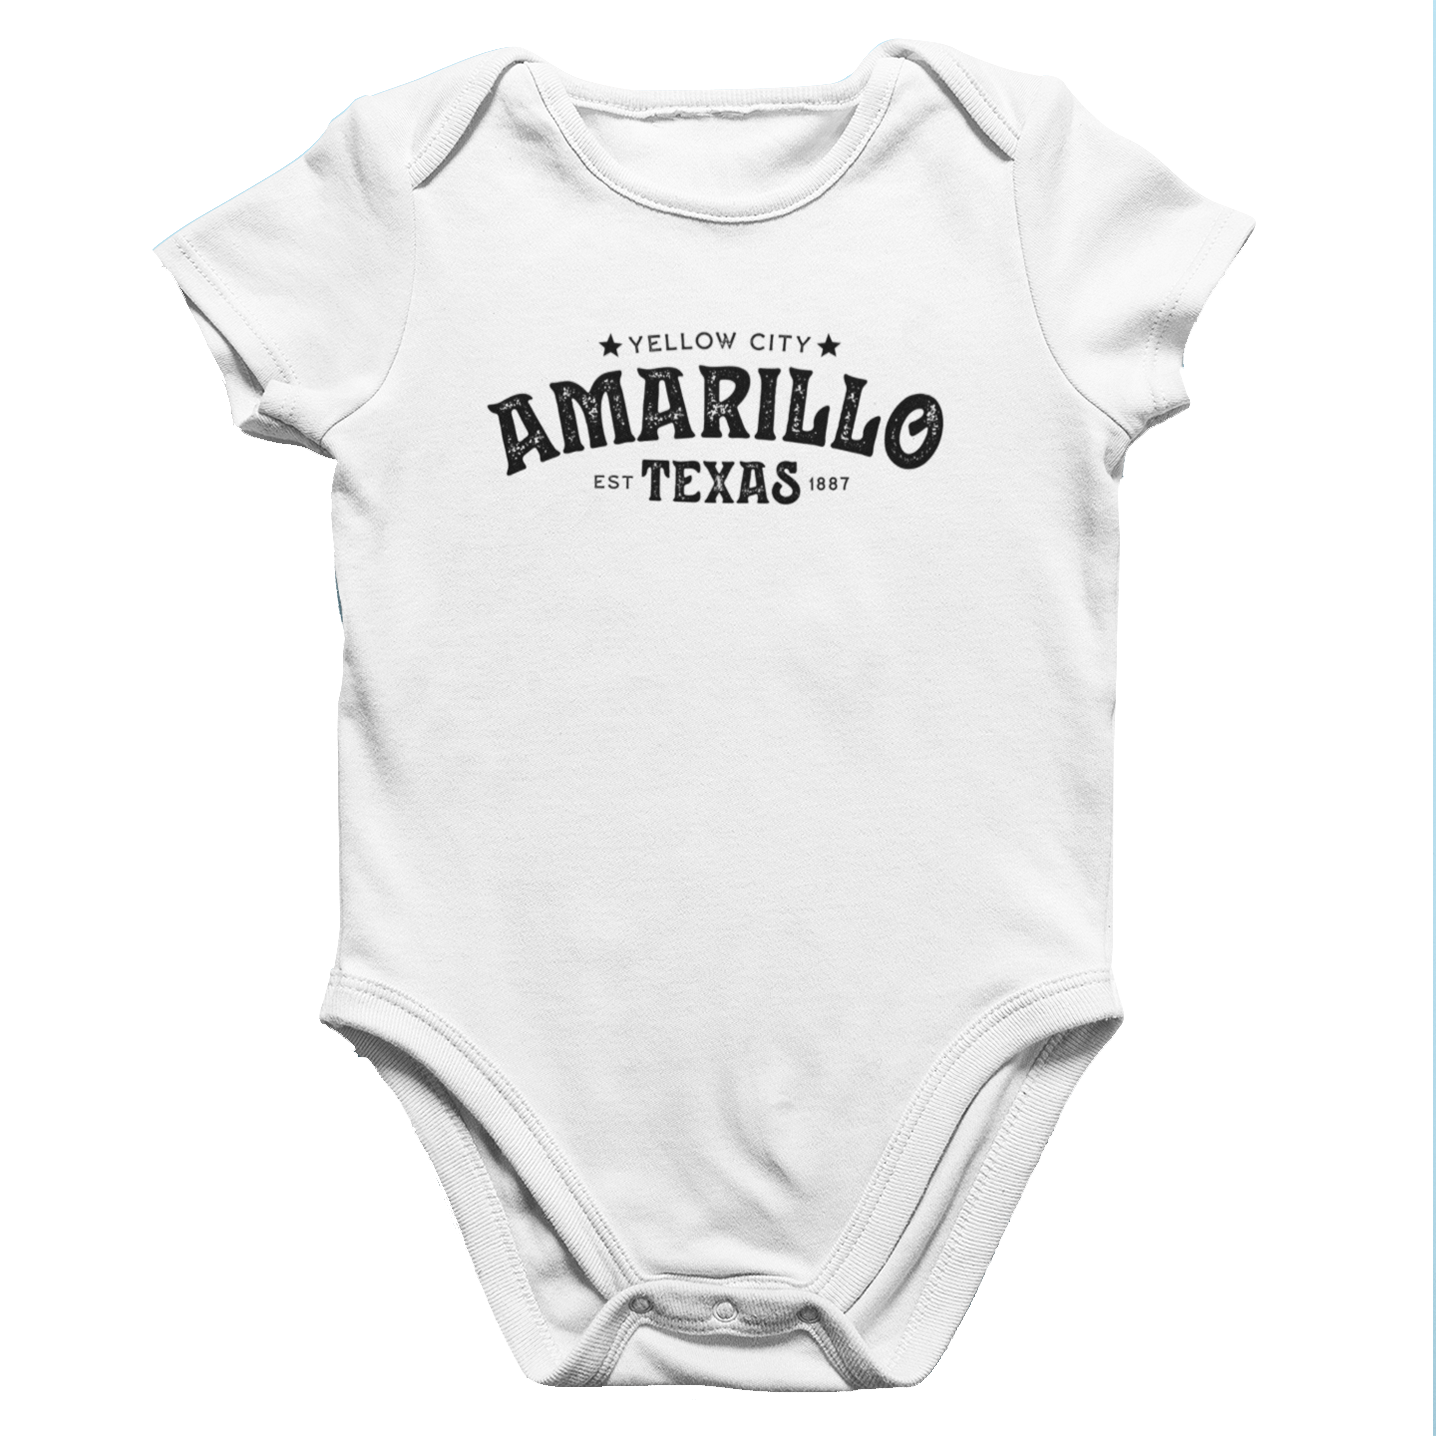 Amarillo Texas Infant Onesie - Yellow City